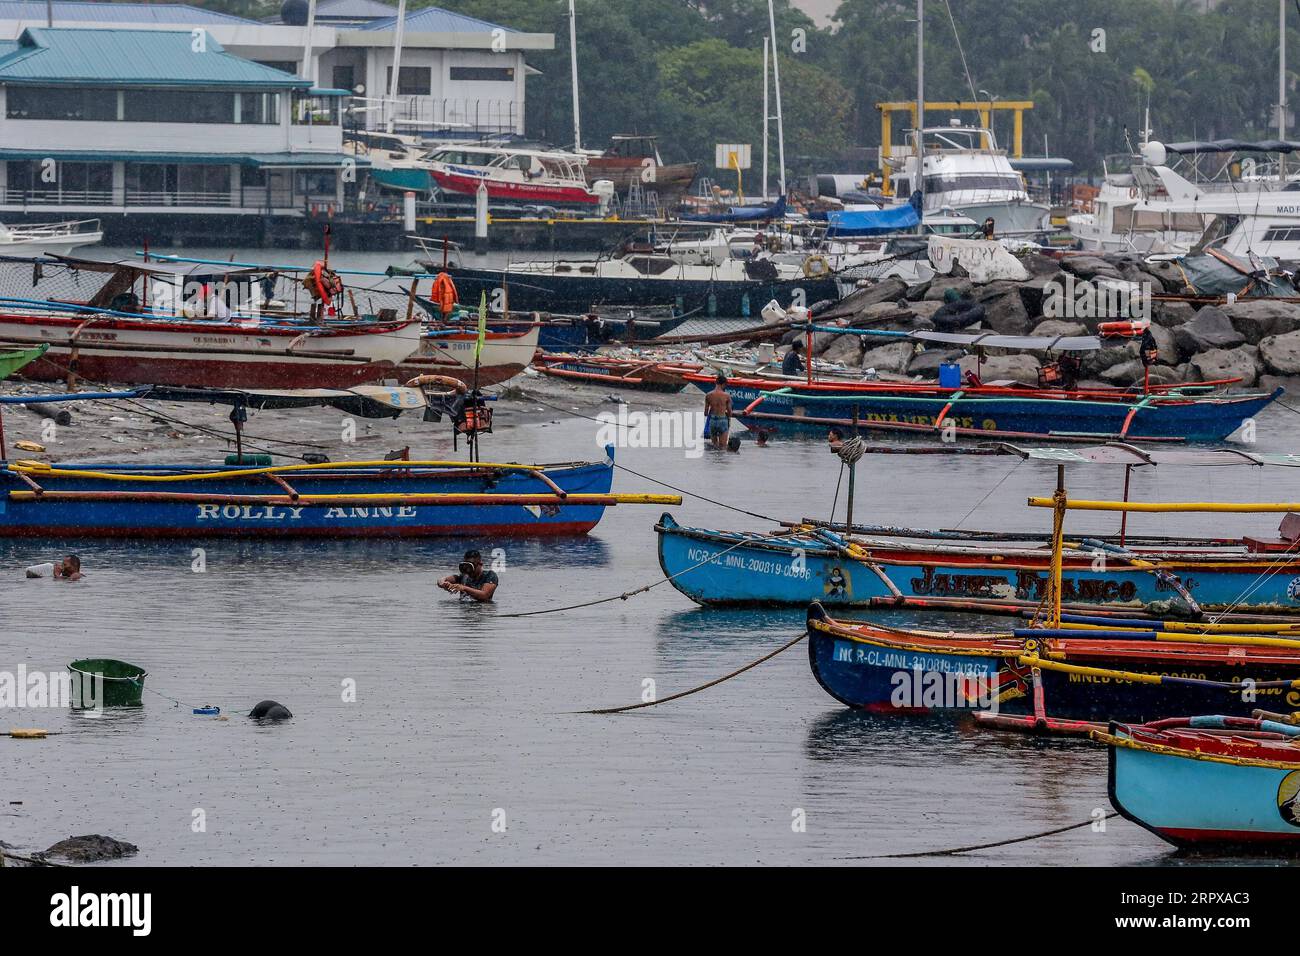 200515 -- MANILA, 15. Mai 2020 Xinhua -- Fischer schwimmen, um Krabben zu fangen, die durch den Taifun Vongfong am 15. Mai 2020 in der Bucht von Manila auf den Philippinen verursacht wurden. Taifun Vongfong riss Dächer ab und erschütterte Bäume, als er am Donnerstag um 12:15 Uhr Ortszeit in der zentralphilippinischen Provinz Eastern Samar landete, sagten die Behörden. Vongfong ist der erste Taifun, der die Philippinen in diesem Jahr erschüttert, da das Land mit den Auswirkungen der COVID-19-Pandemie zu kämpfen hat. Xinhua/Rouelle Umali PHILIPPINEN-MANILA-TAIFUN VONGFONG PUBLICATIONxNOTxINxCHN Stockfoto